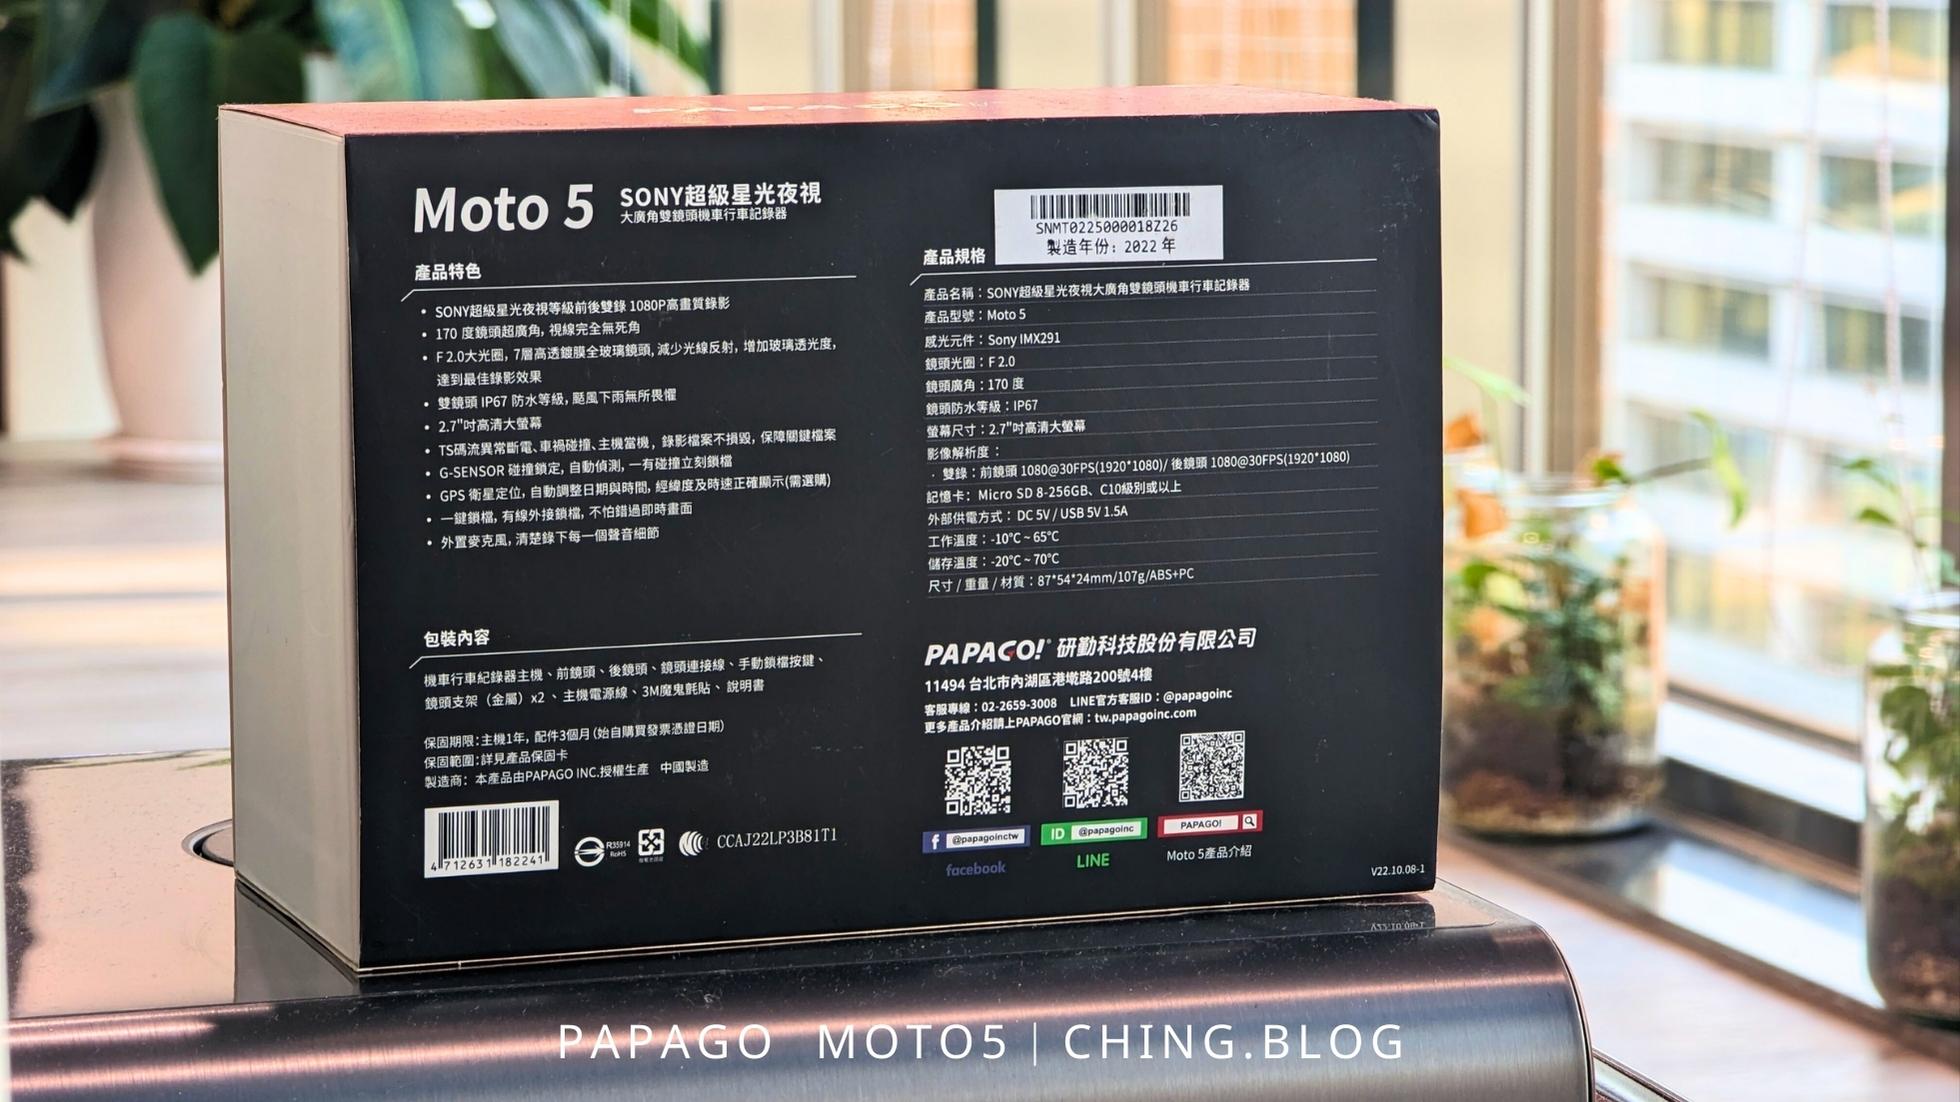 [開箱]PAPAGO MOTO 5 SONY超級星光夜視行車紀錄器推薦 行車安全幫手